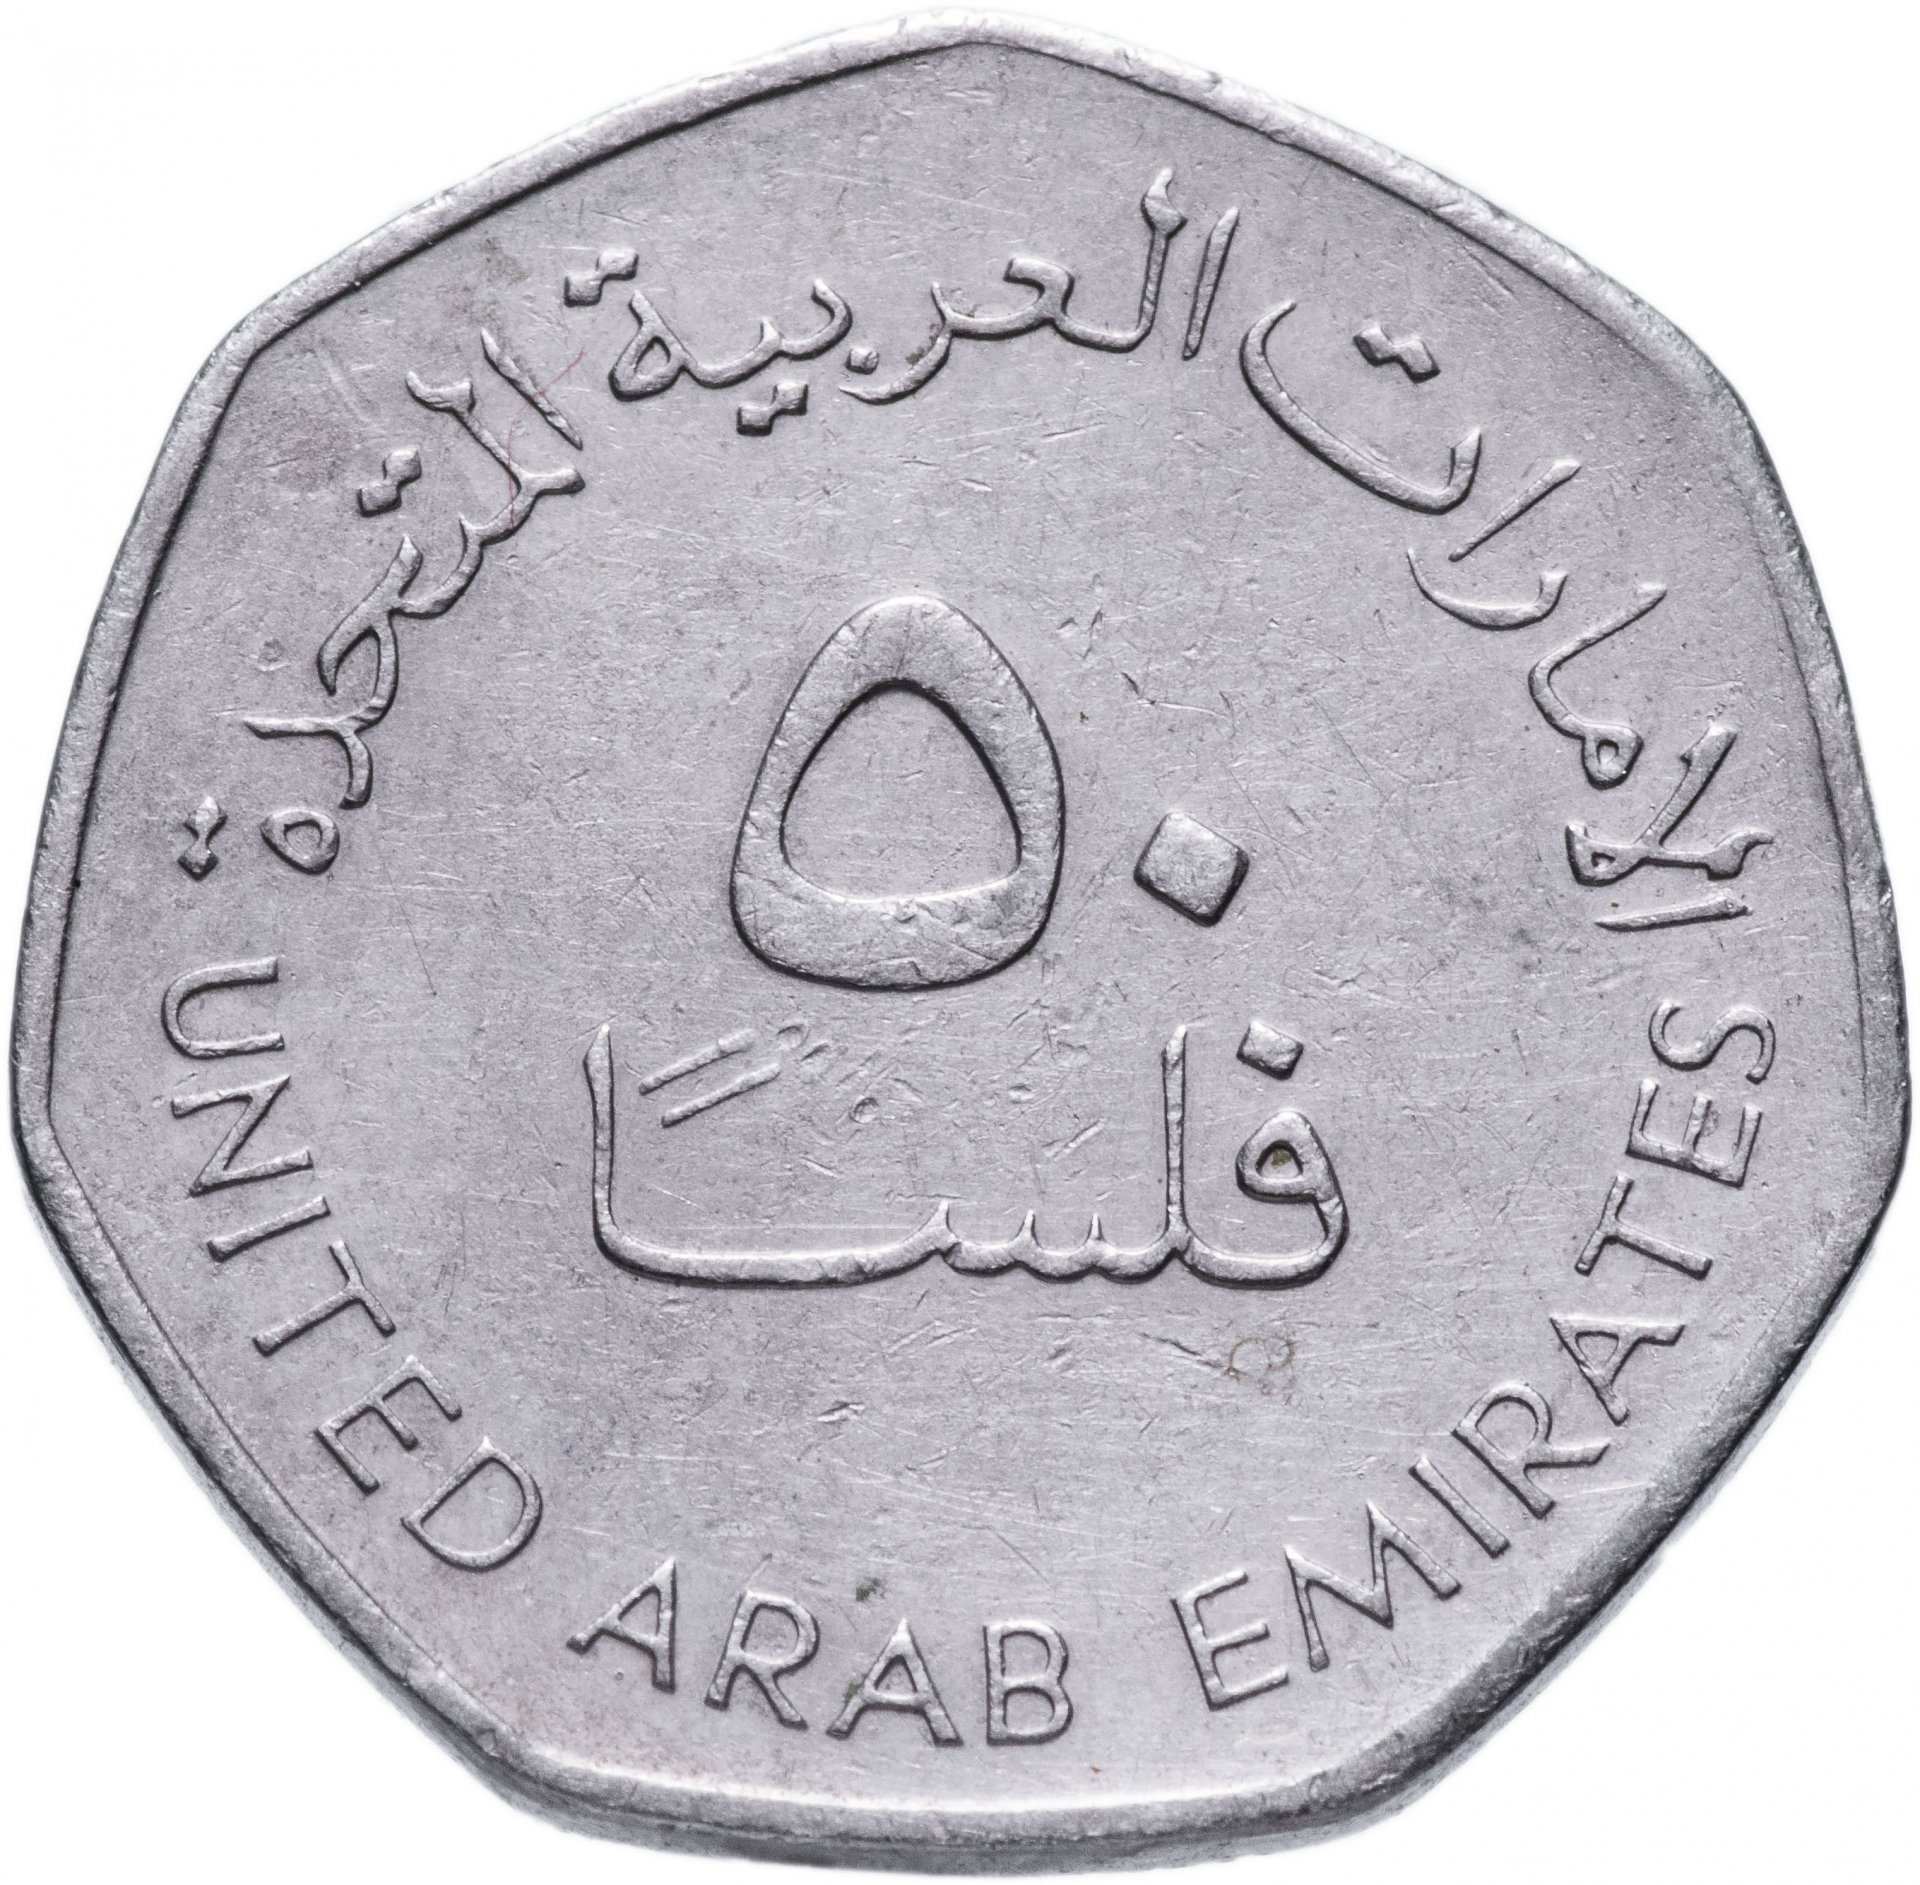 330 дирхам. 50 Филсов 1995-2007 ОАЭ. Арабские эмираты монета 50 филсов. Монеты 50 филсов арабский. 50 Филсов 2007 ОАЭ.